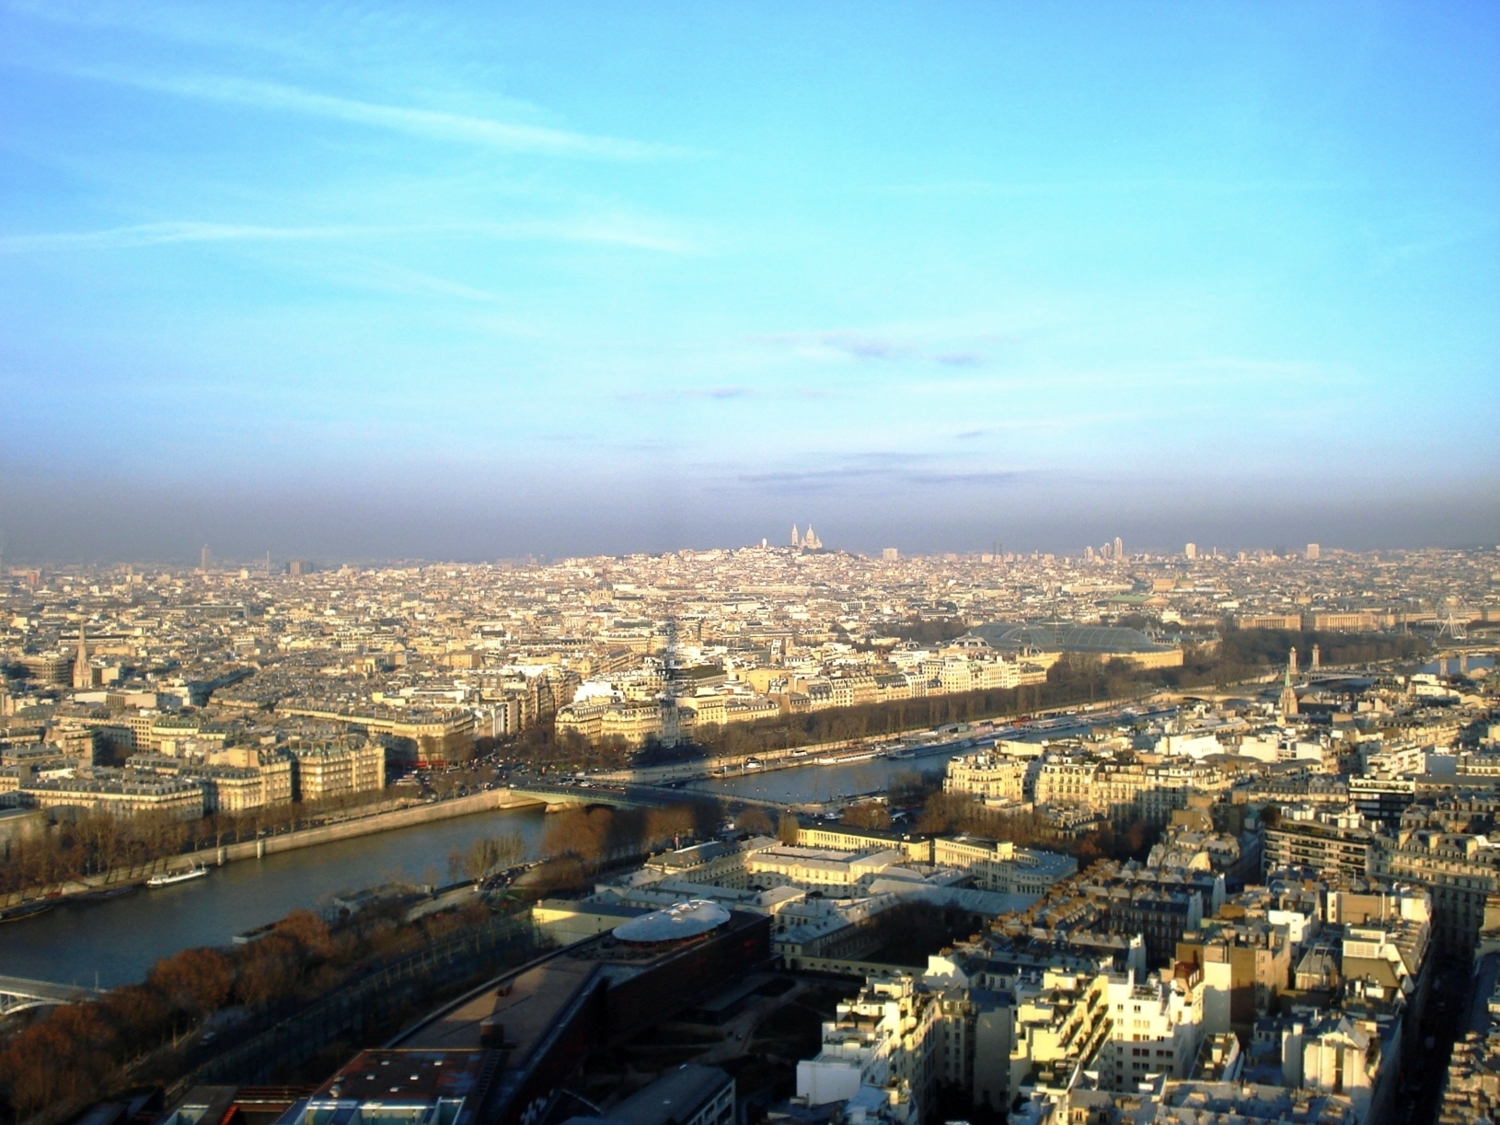 Париж. Вид с башни